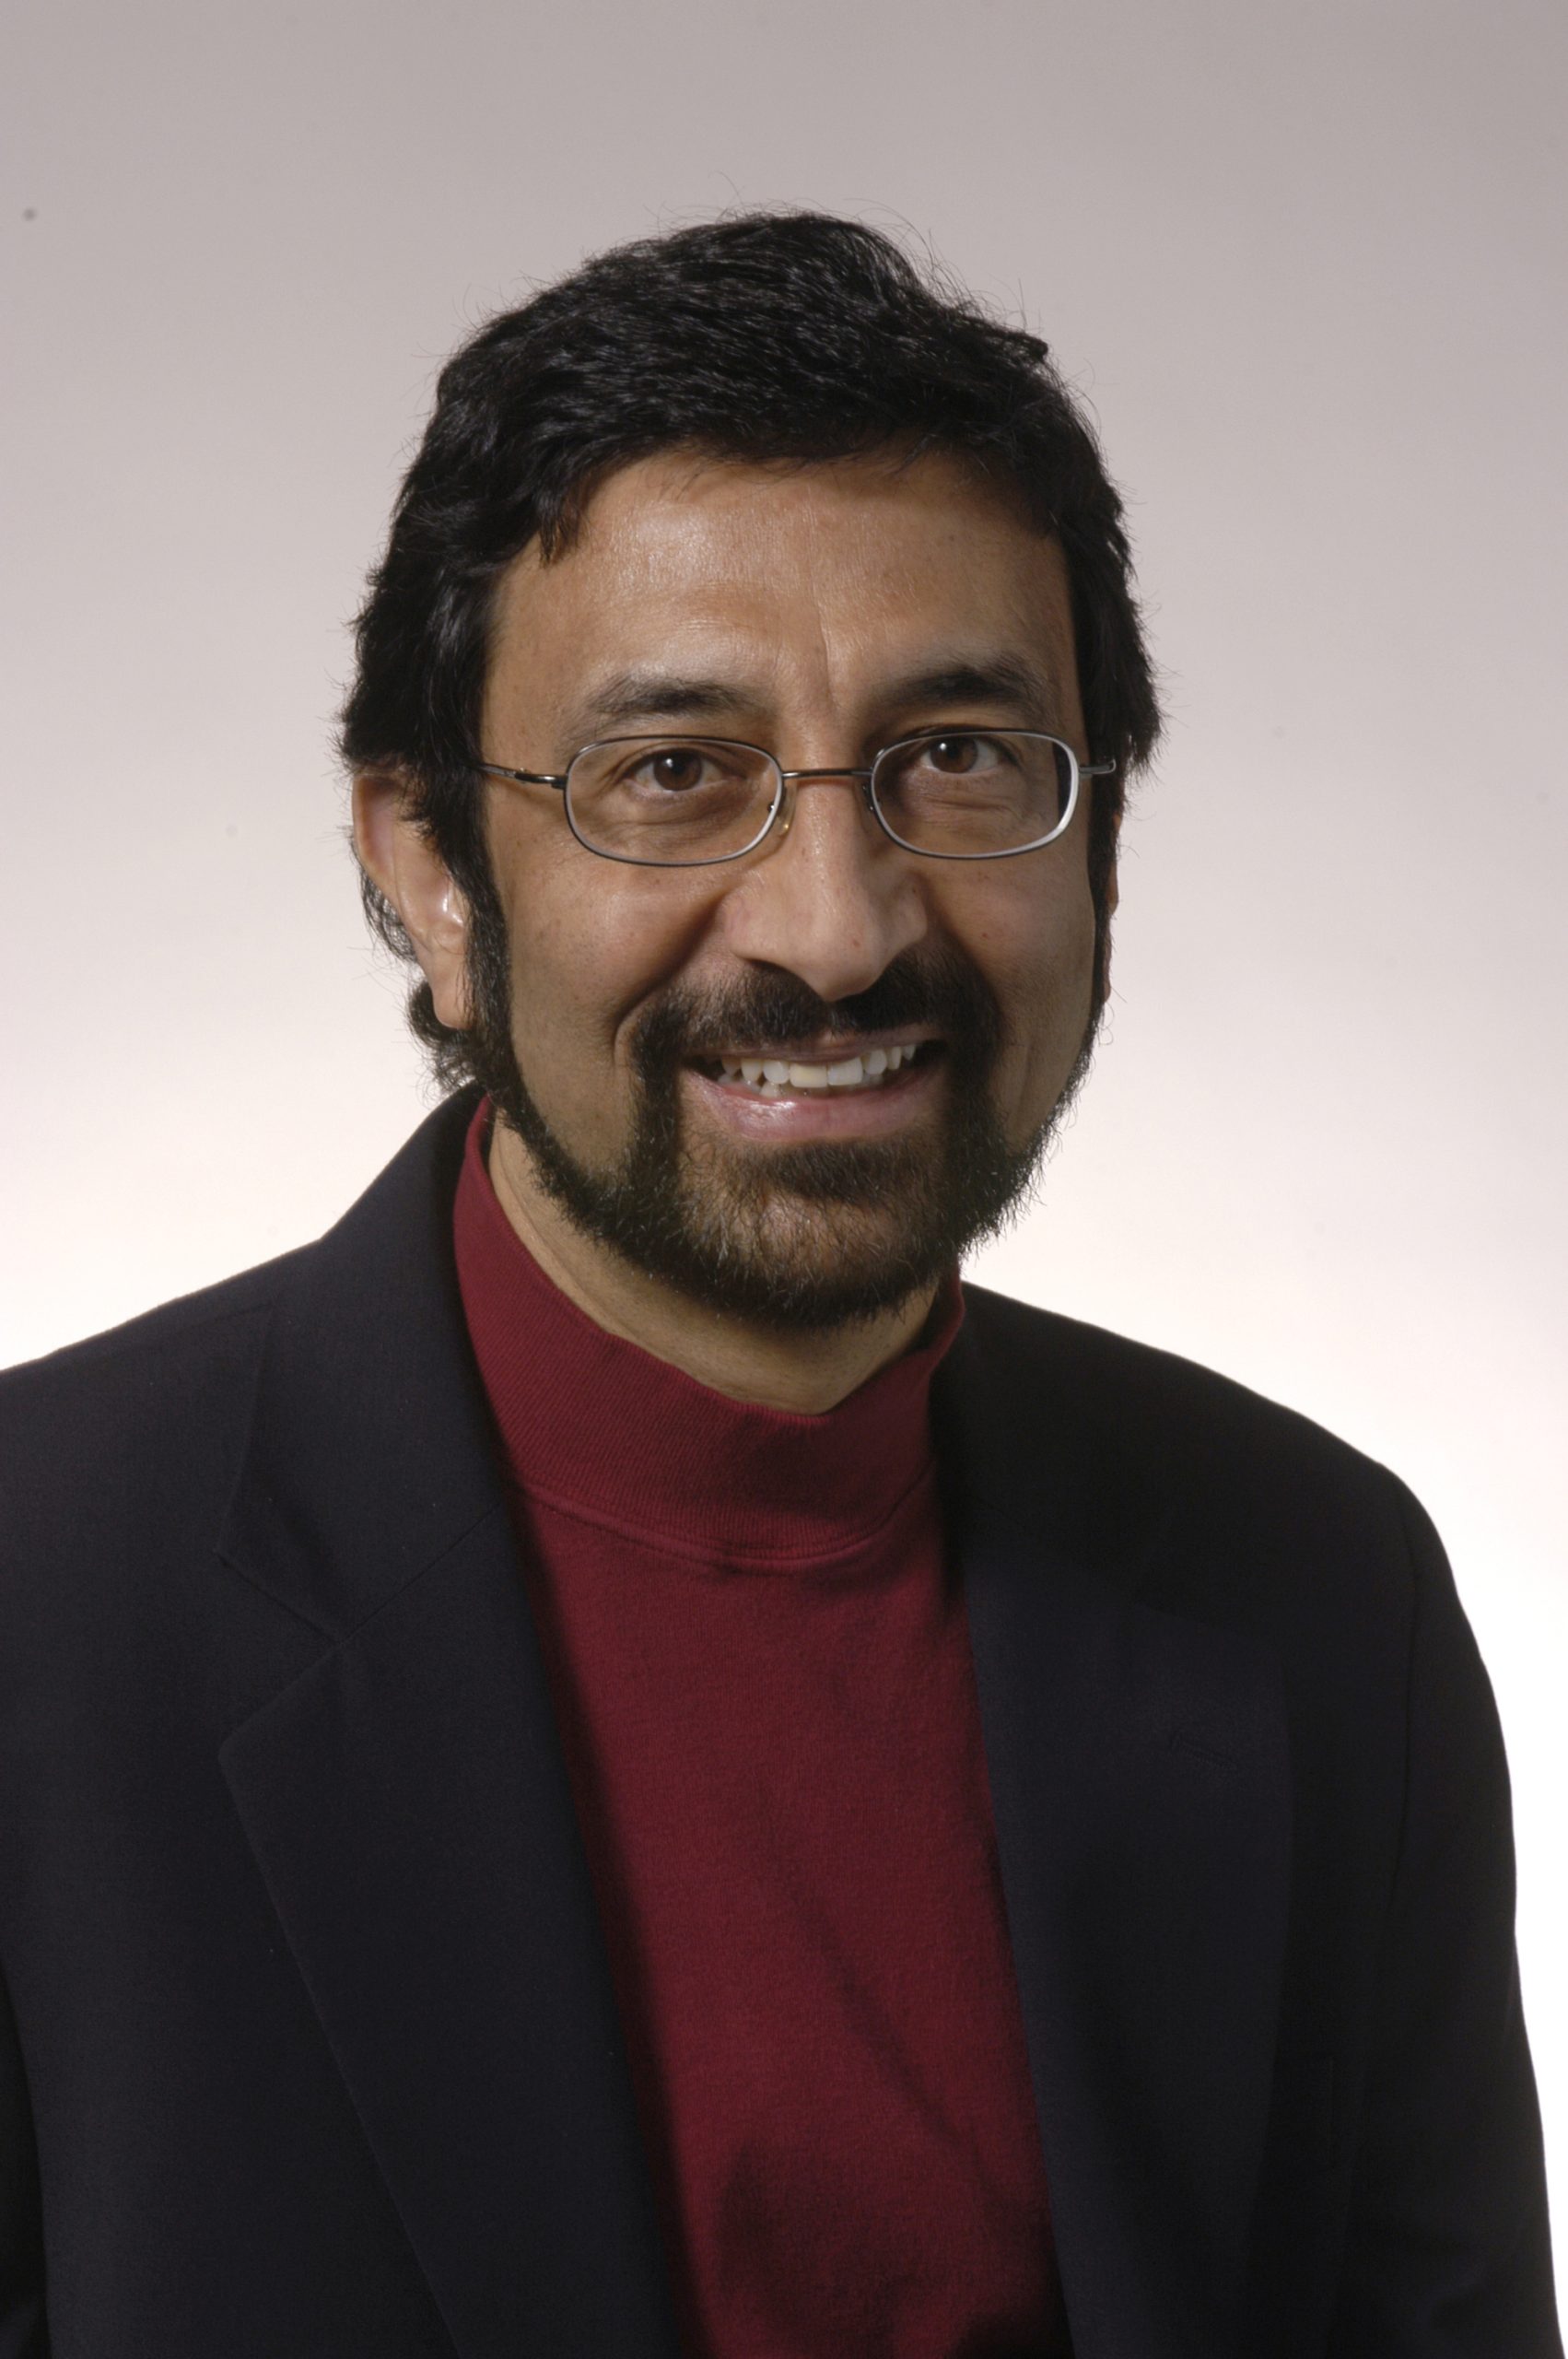 Professor Rajan Suri